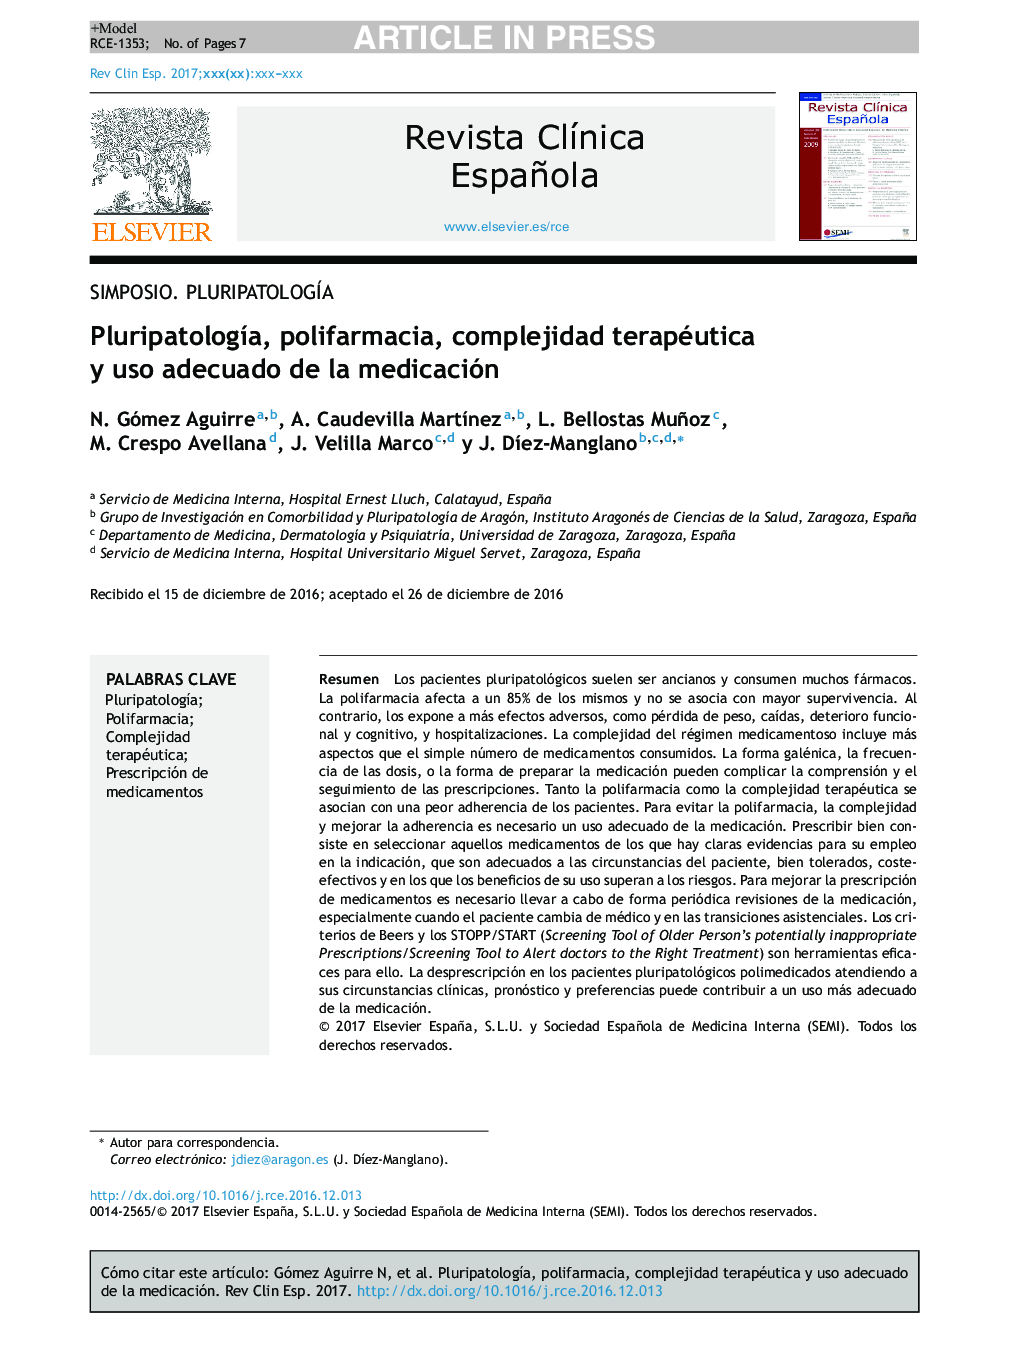 PluripatologÃ­a, polifarmacia, complejidad terapéutica y uso adecuado de la medicación